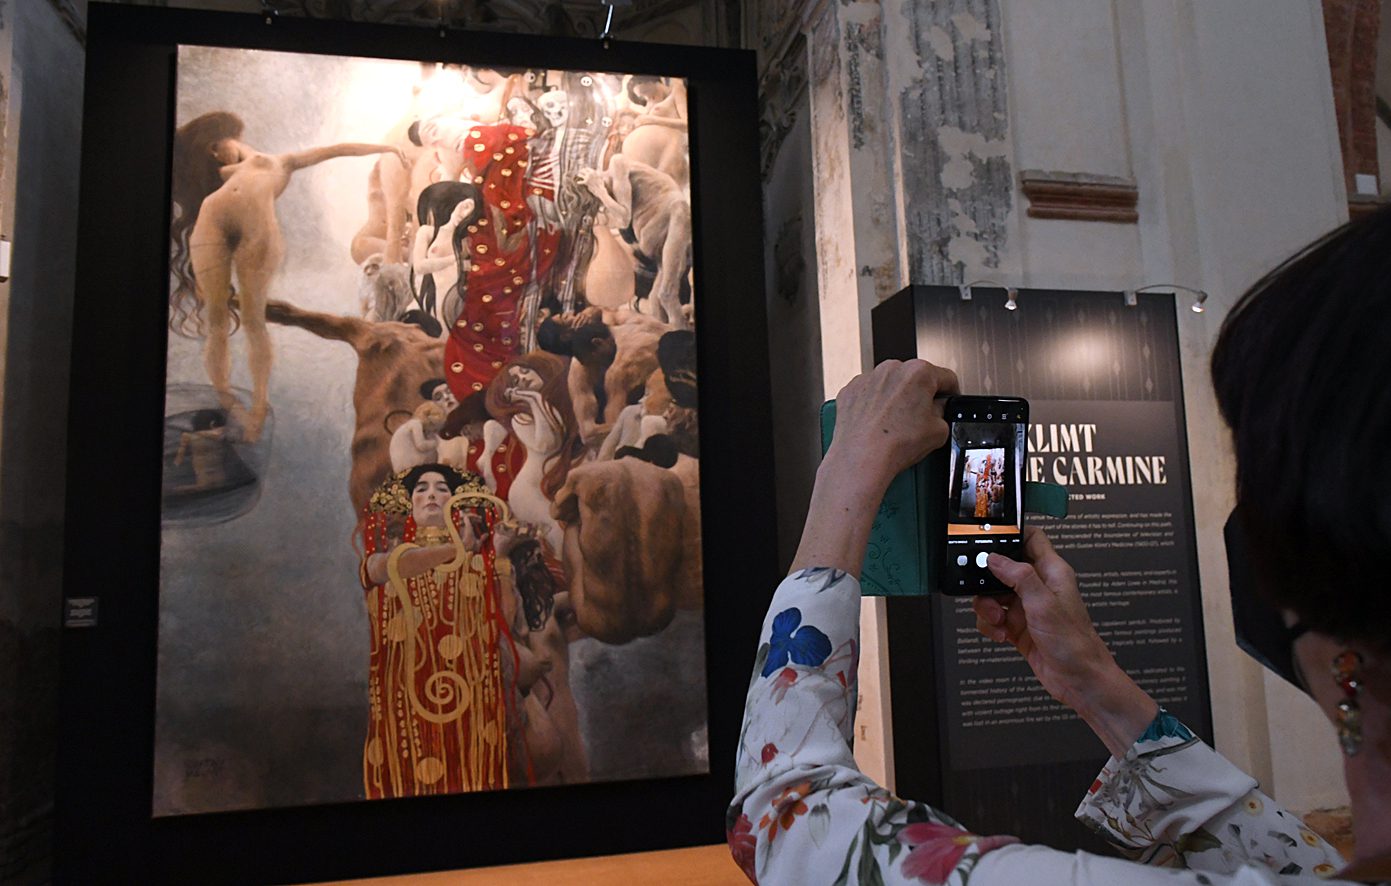 Tecnologia a serviço da cultura: “Medicina”, obra proibida de Klimt que foi destruída, volta à vida no Carmine